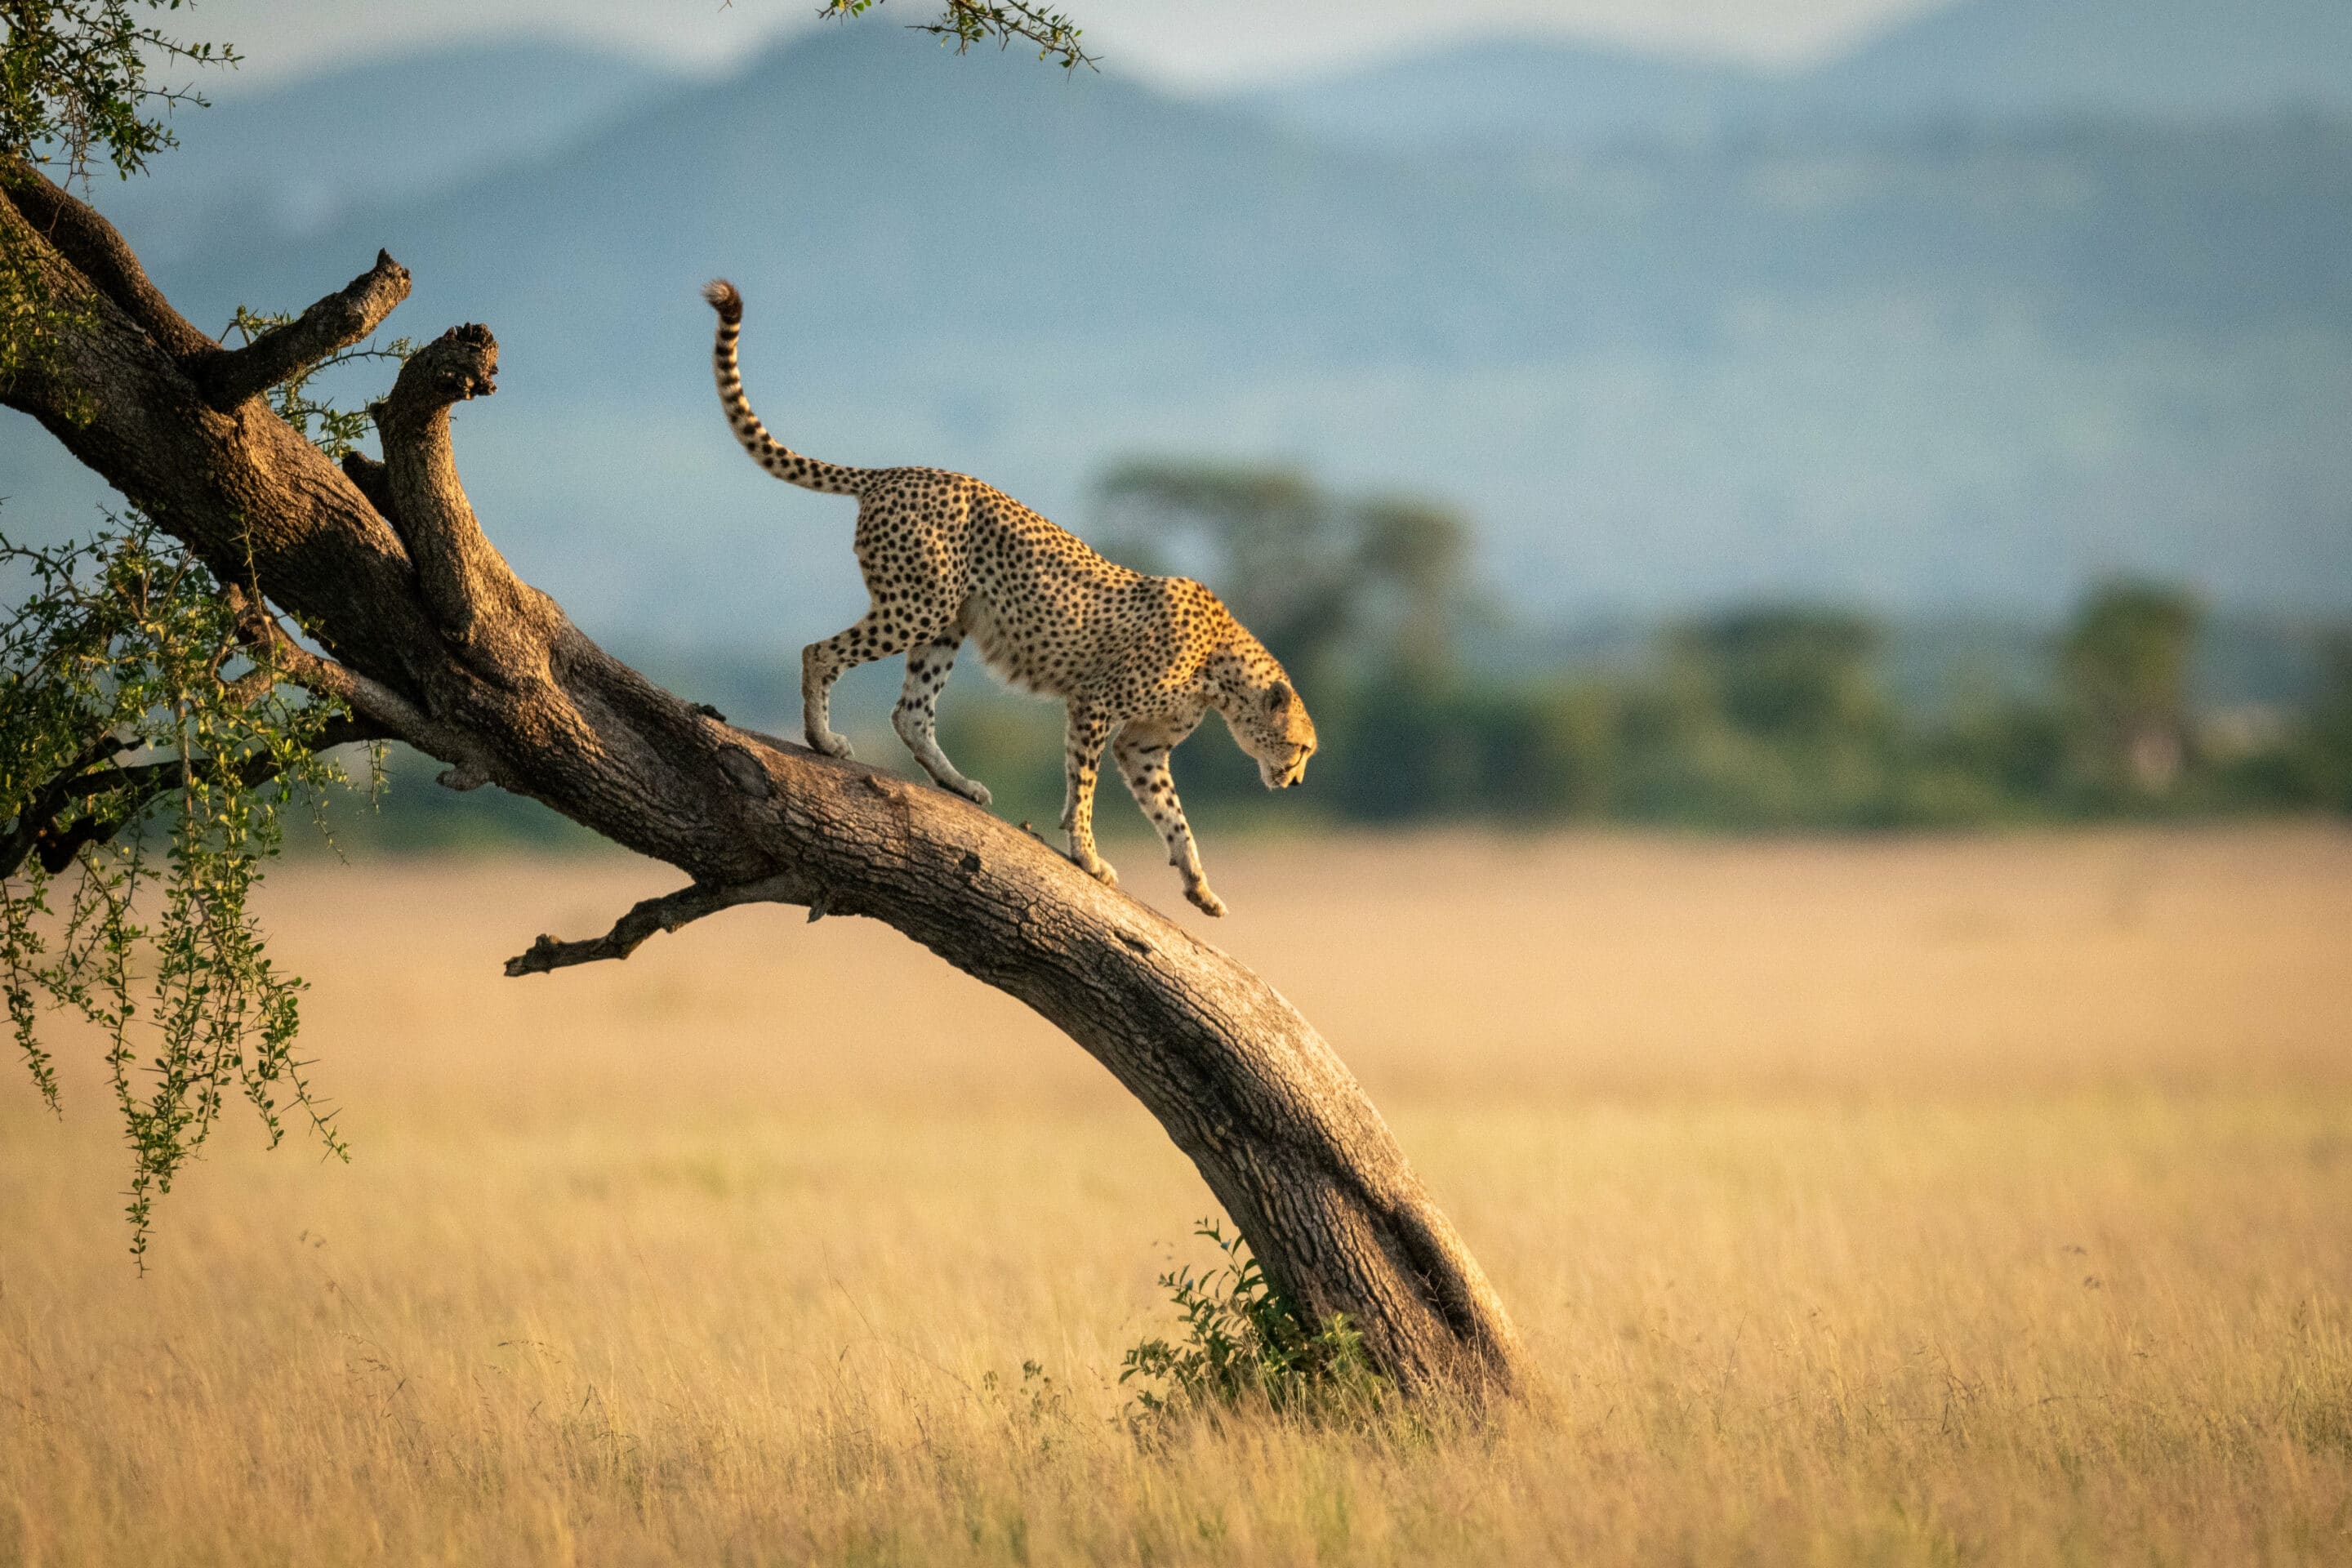 Cheetah walks down a twisted tree in the savannah